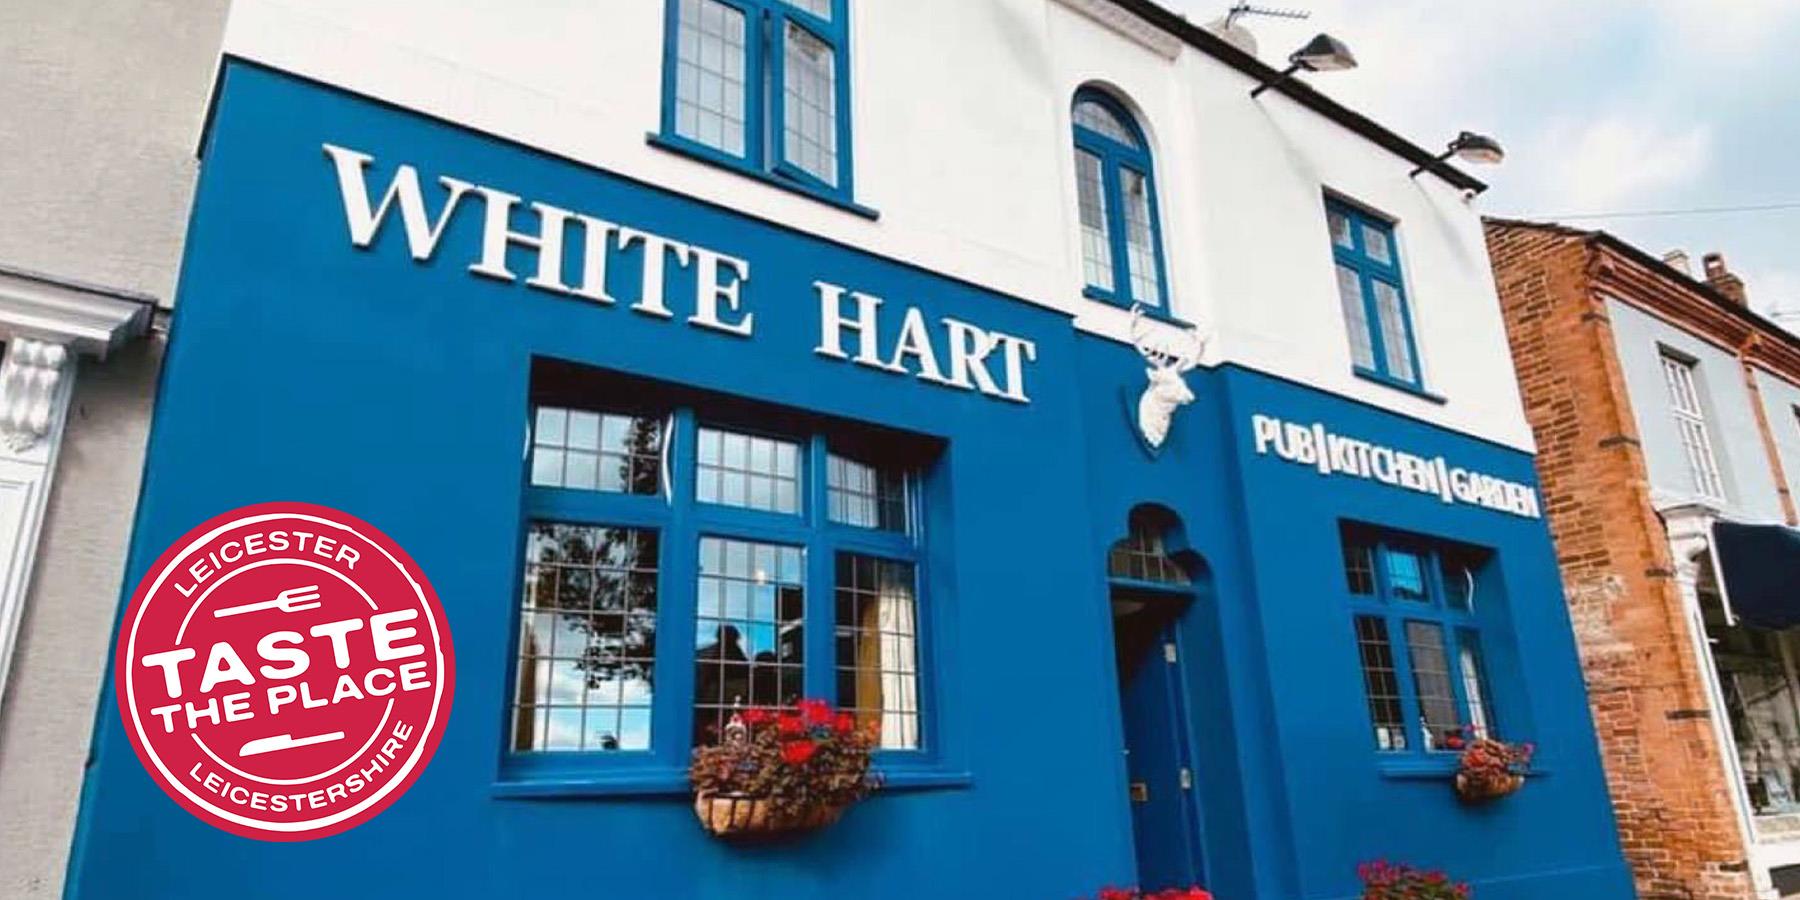 White hart pub outside